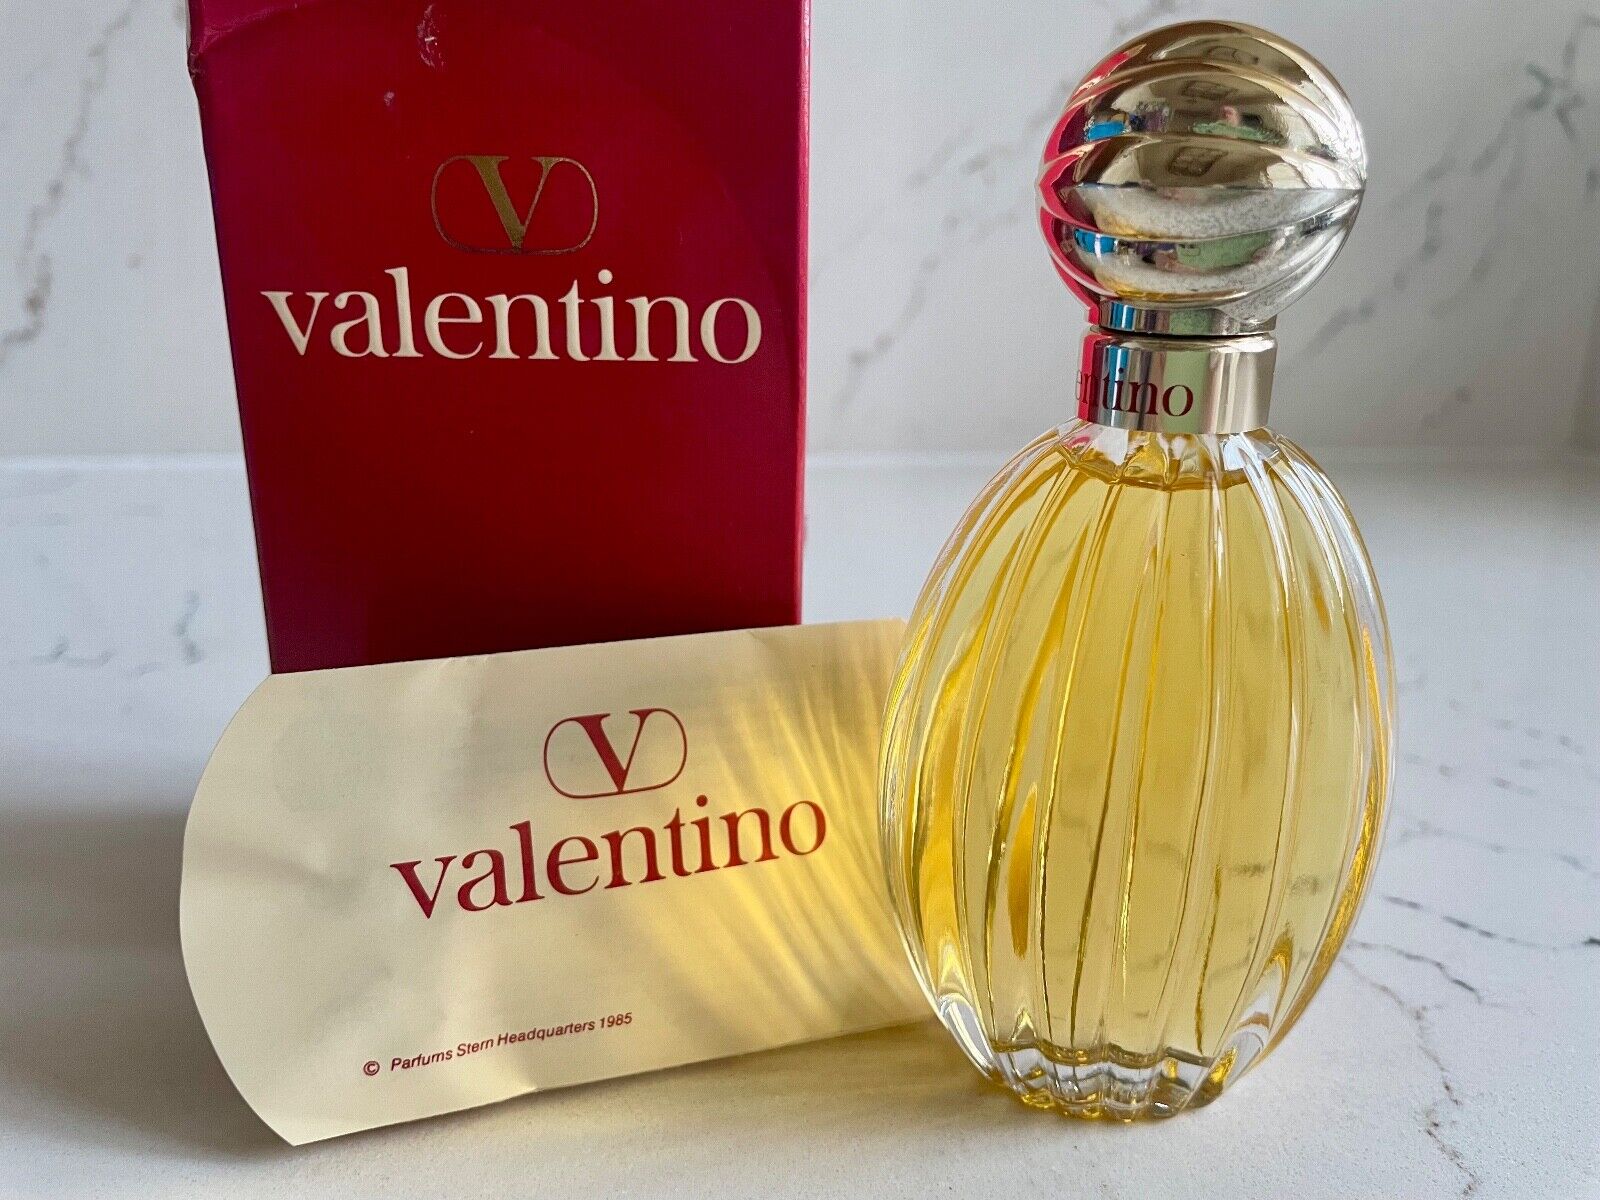 V VALENTINO Perfume 50 ml EDT Splash 1985 Vintage